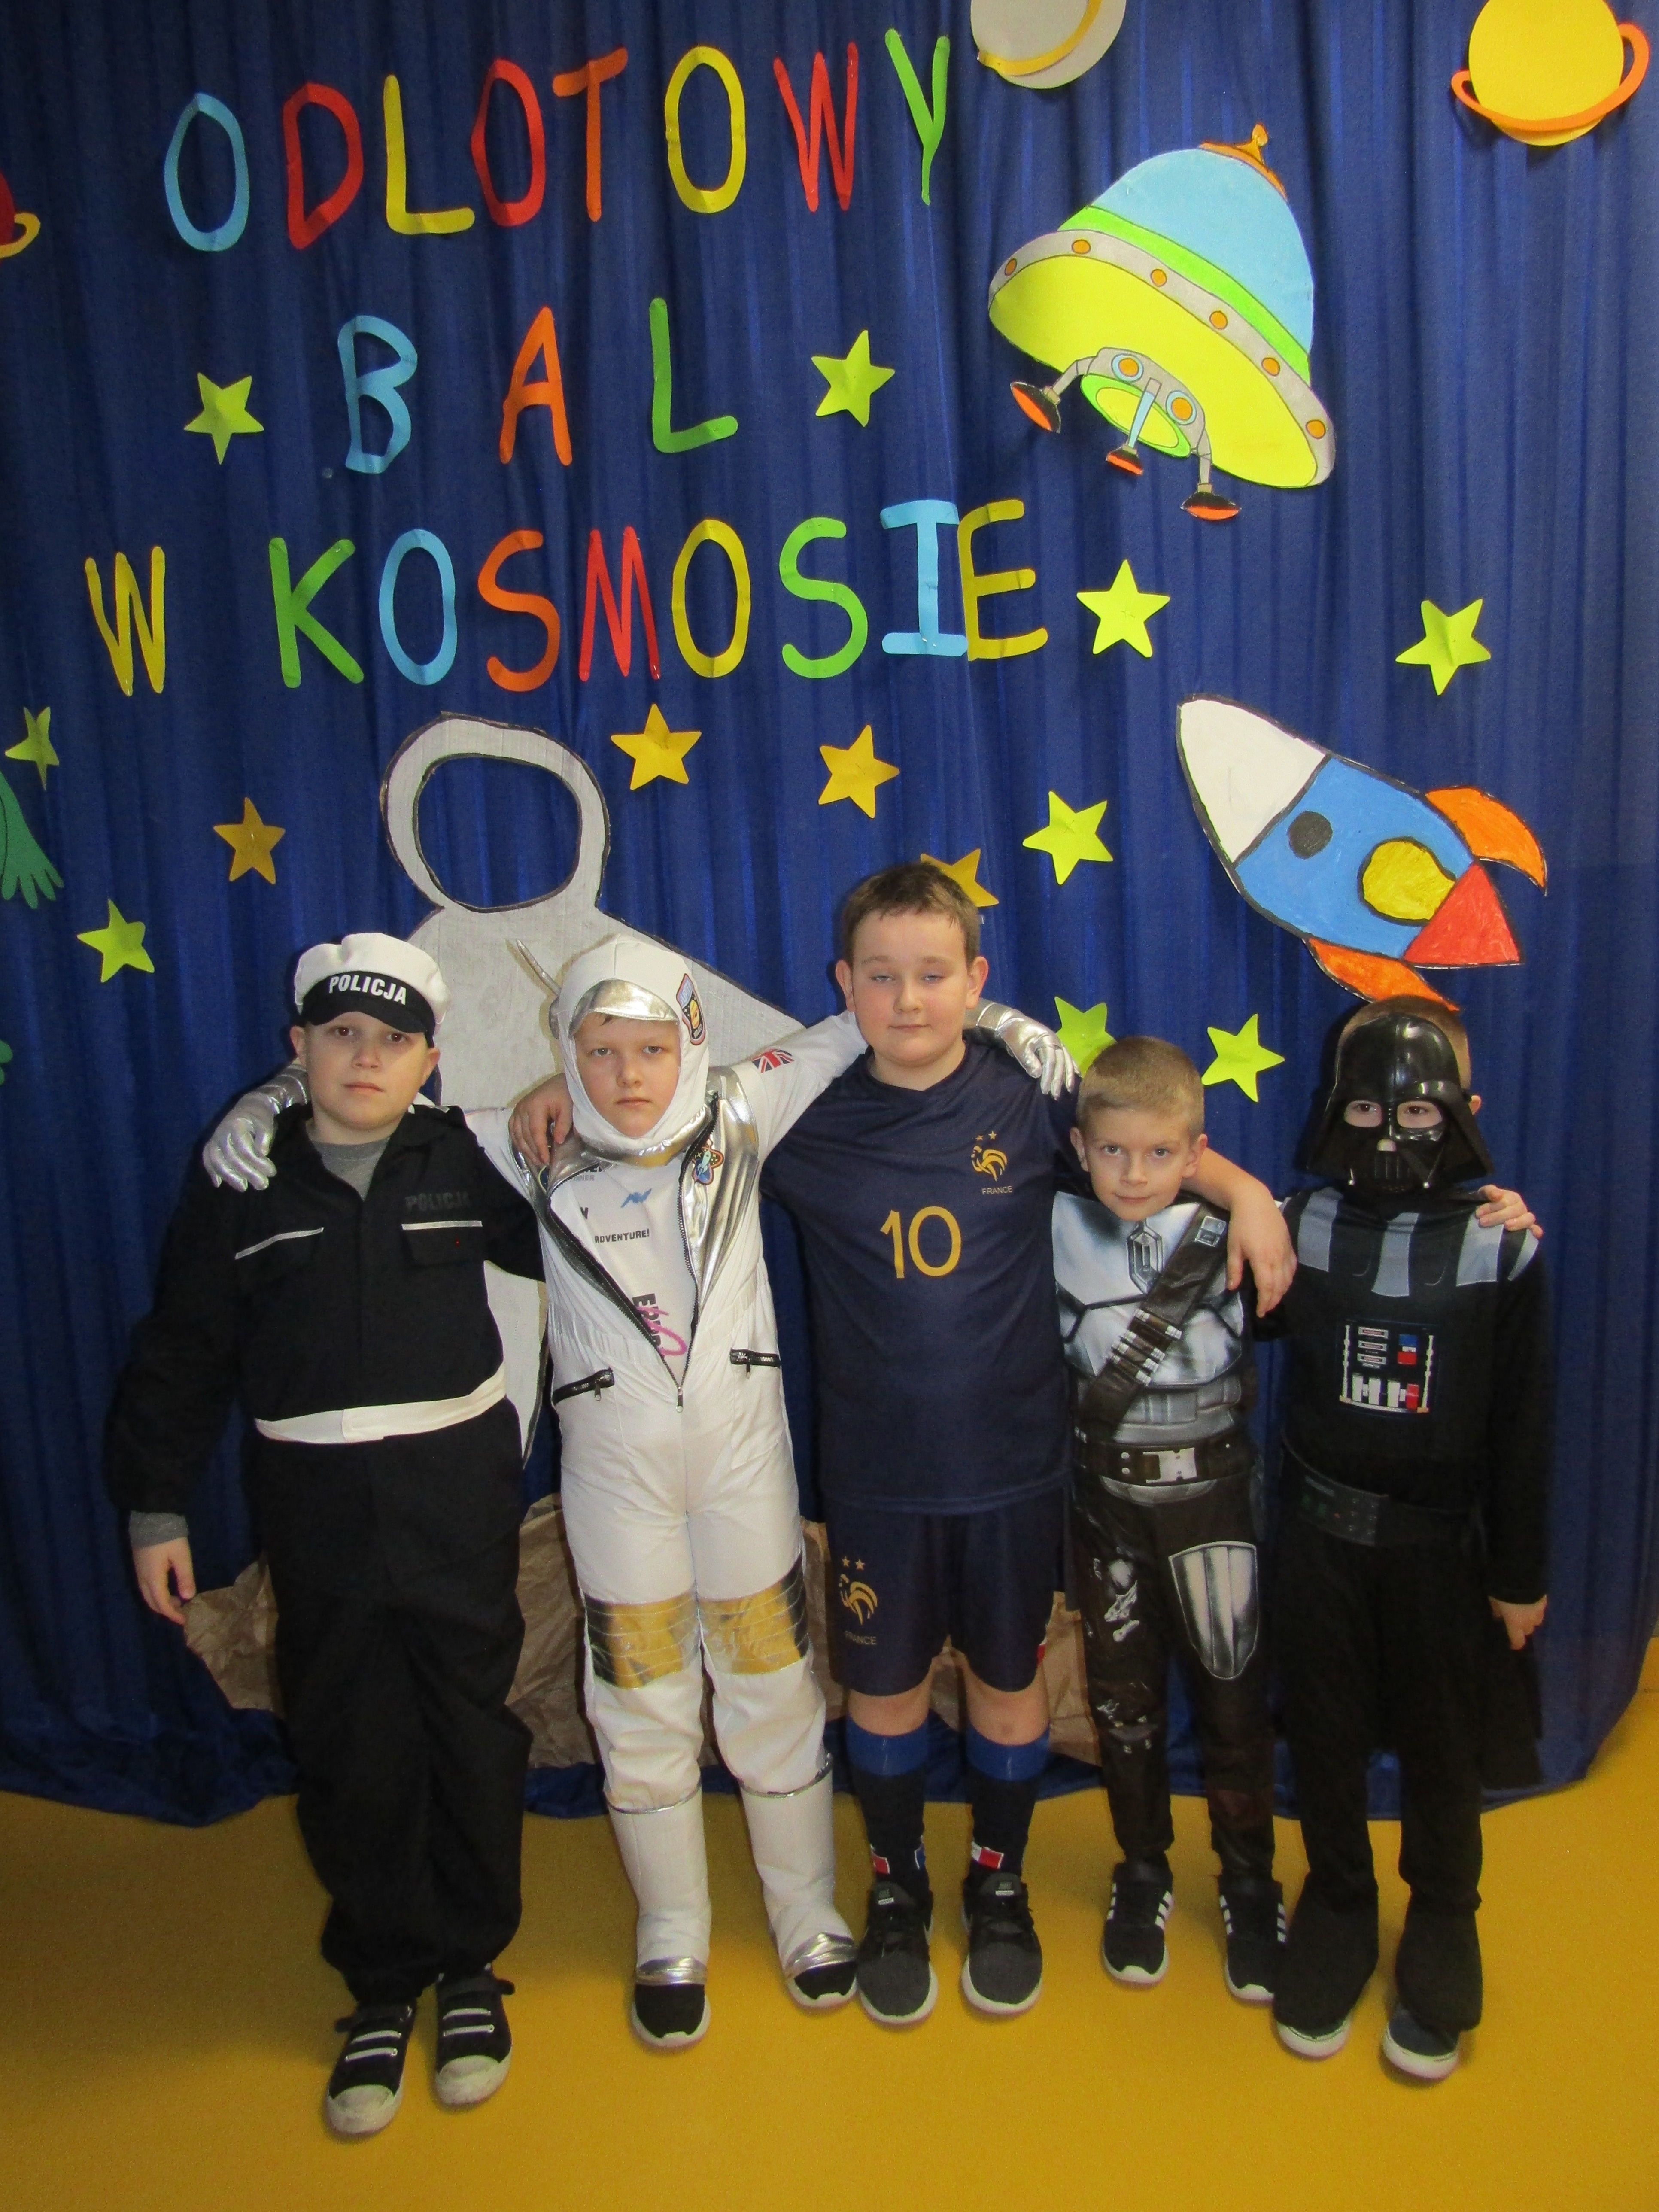 Zdjęcie grupowe uczestników spotkania w przebraniach kosmonauty, policjanta, piłkarza itp